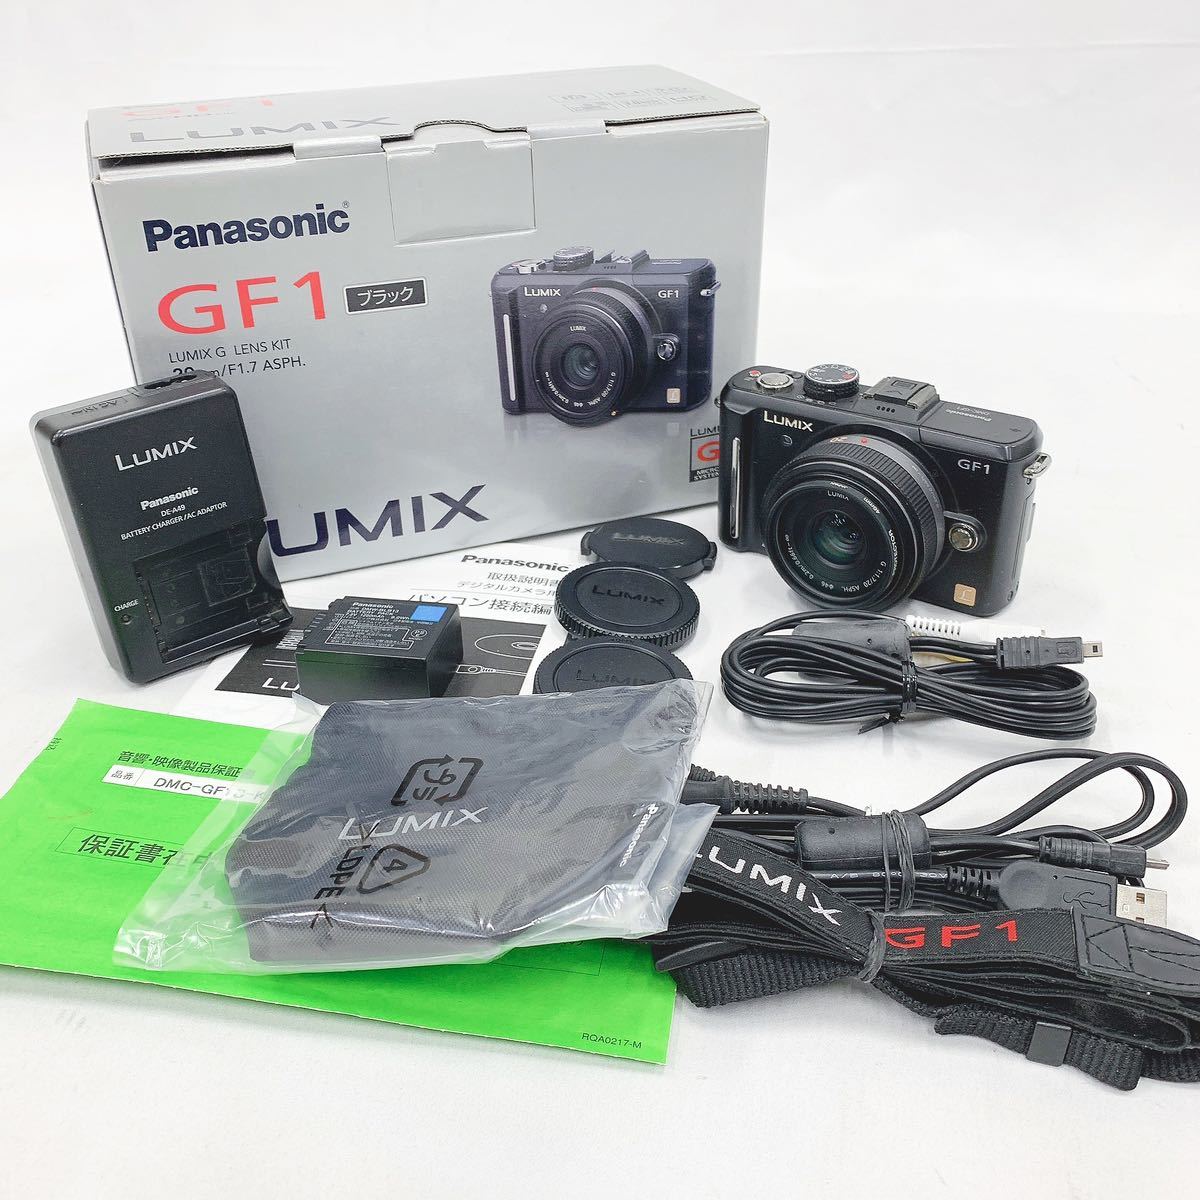 シャッターOK Panasonic パナソニック LUMIX GF1 ミラーレス一眼レフカメラ デジカメ 黒 付属品多数有り R阿1124☆_画像1